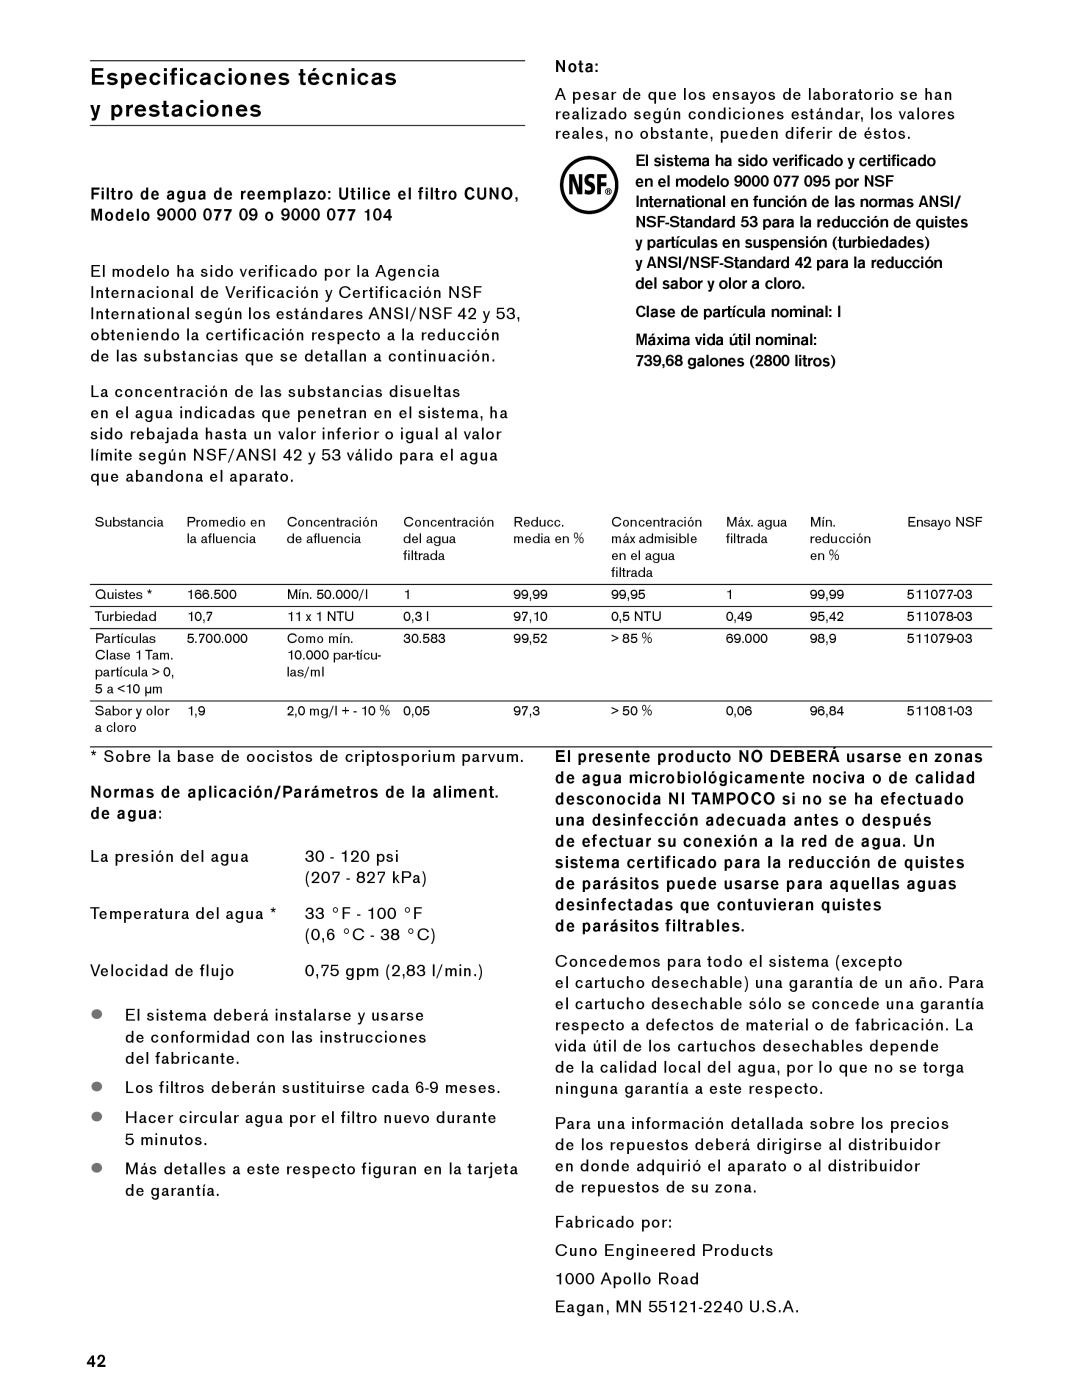 Gaggenau RF 411 manual Especificaciones técnicas y prestaciones, Clase de partícula nominal, de parásitos filtrables, Nota 